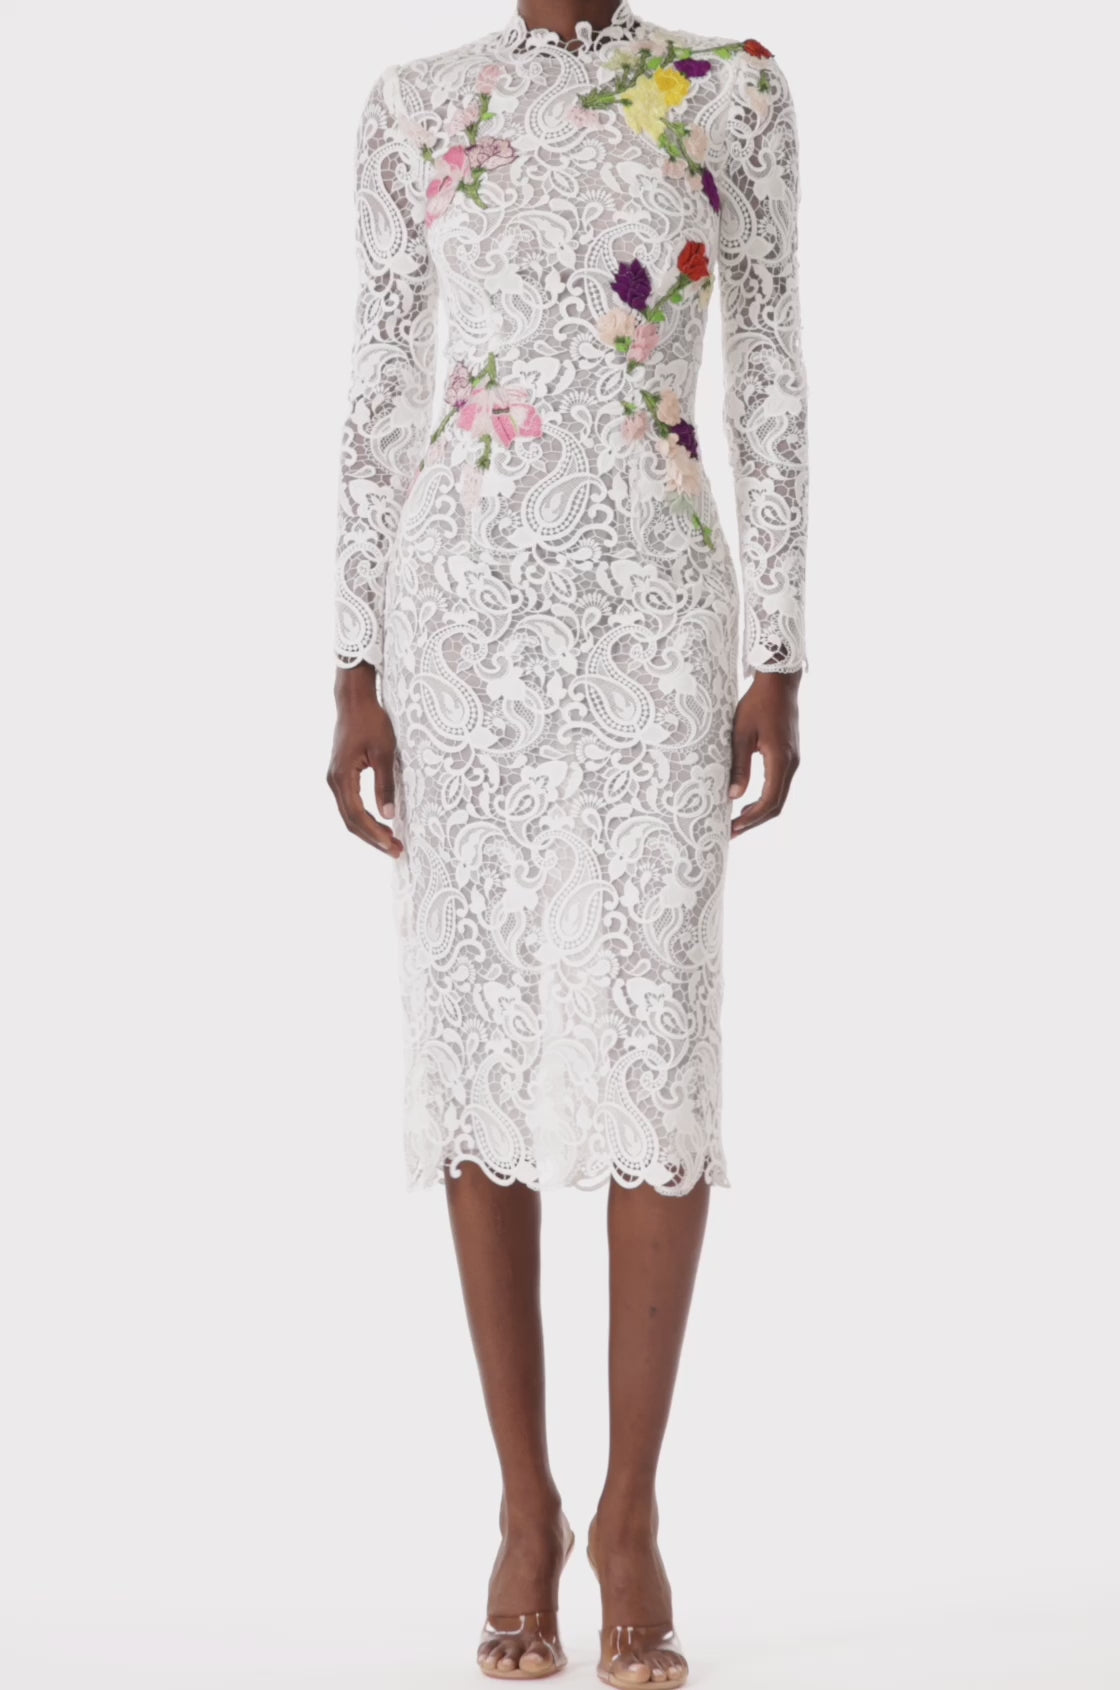 Stylish Dress - Buy Full Sleeve Midi Dress For Girls At Online